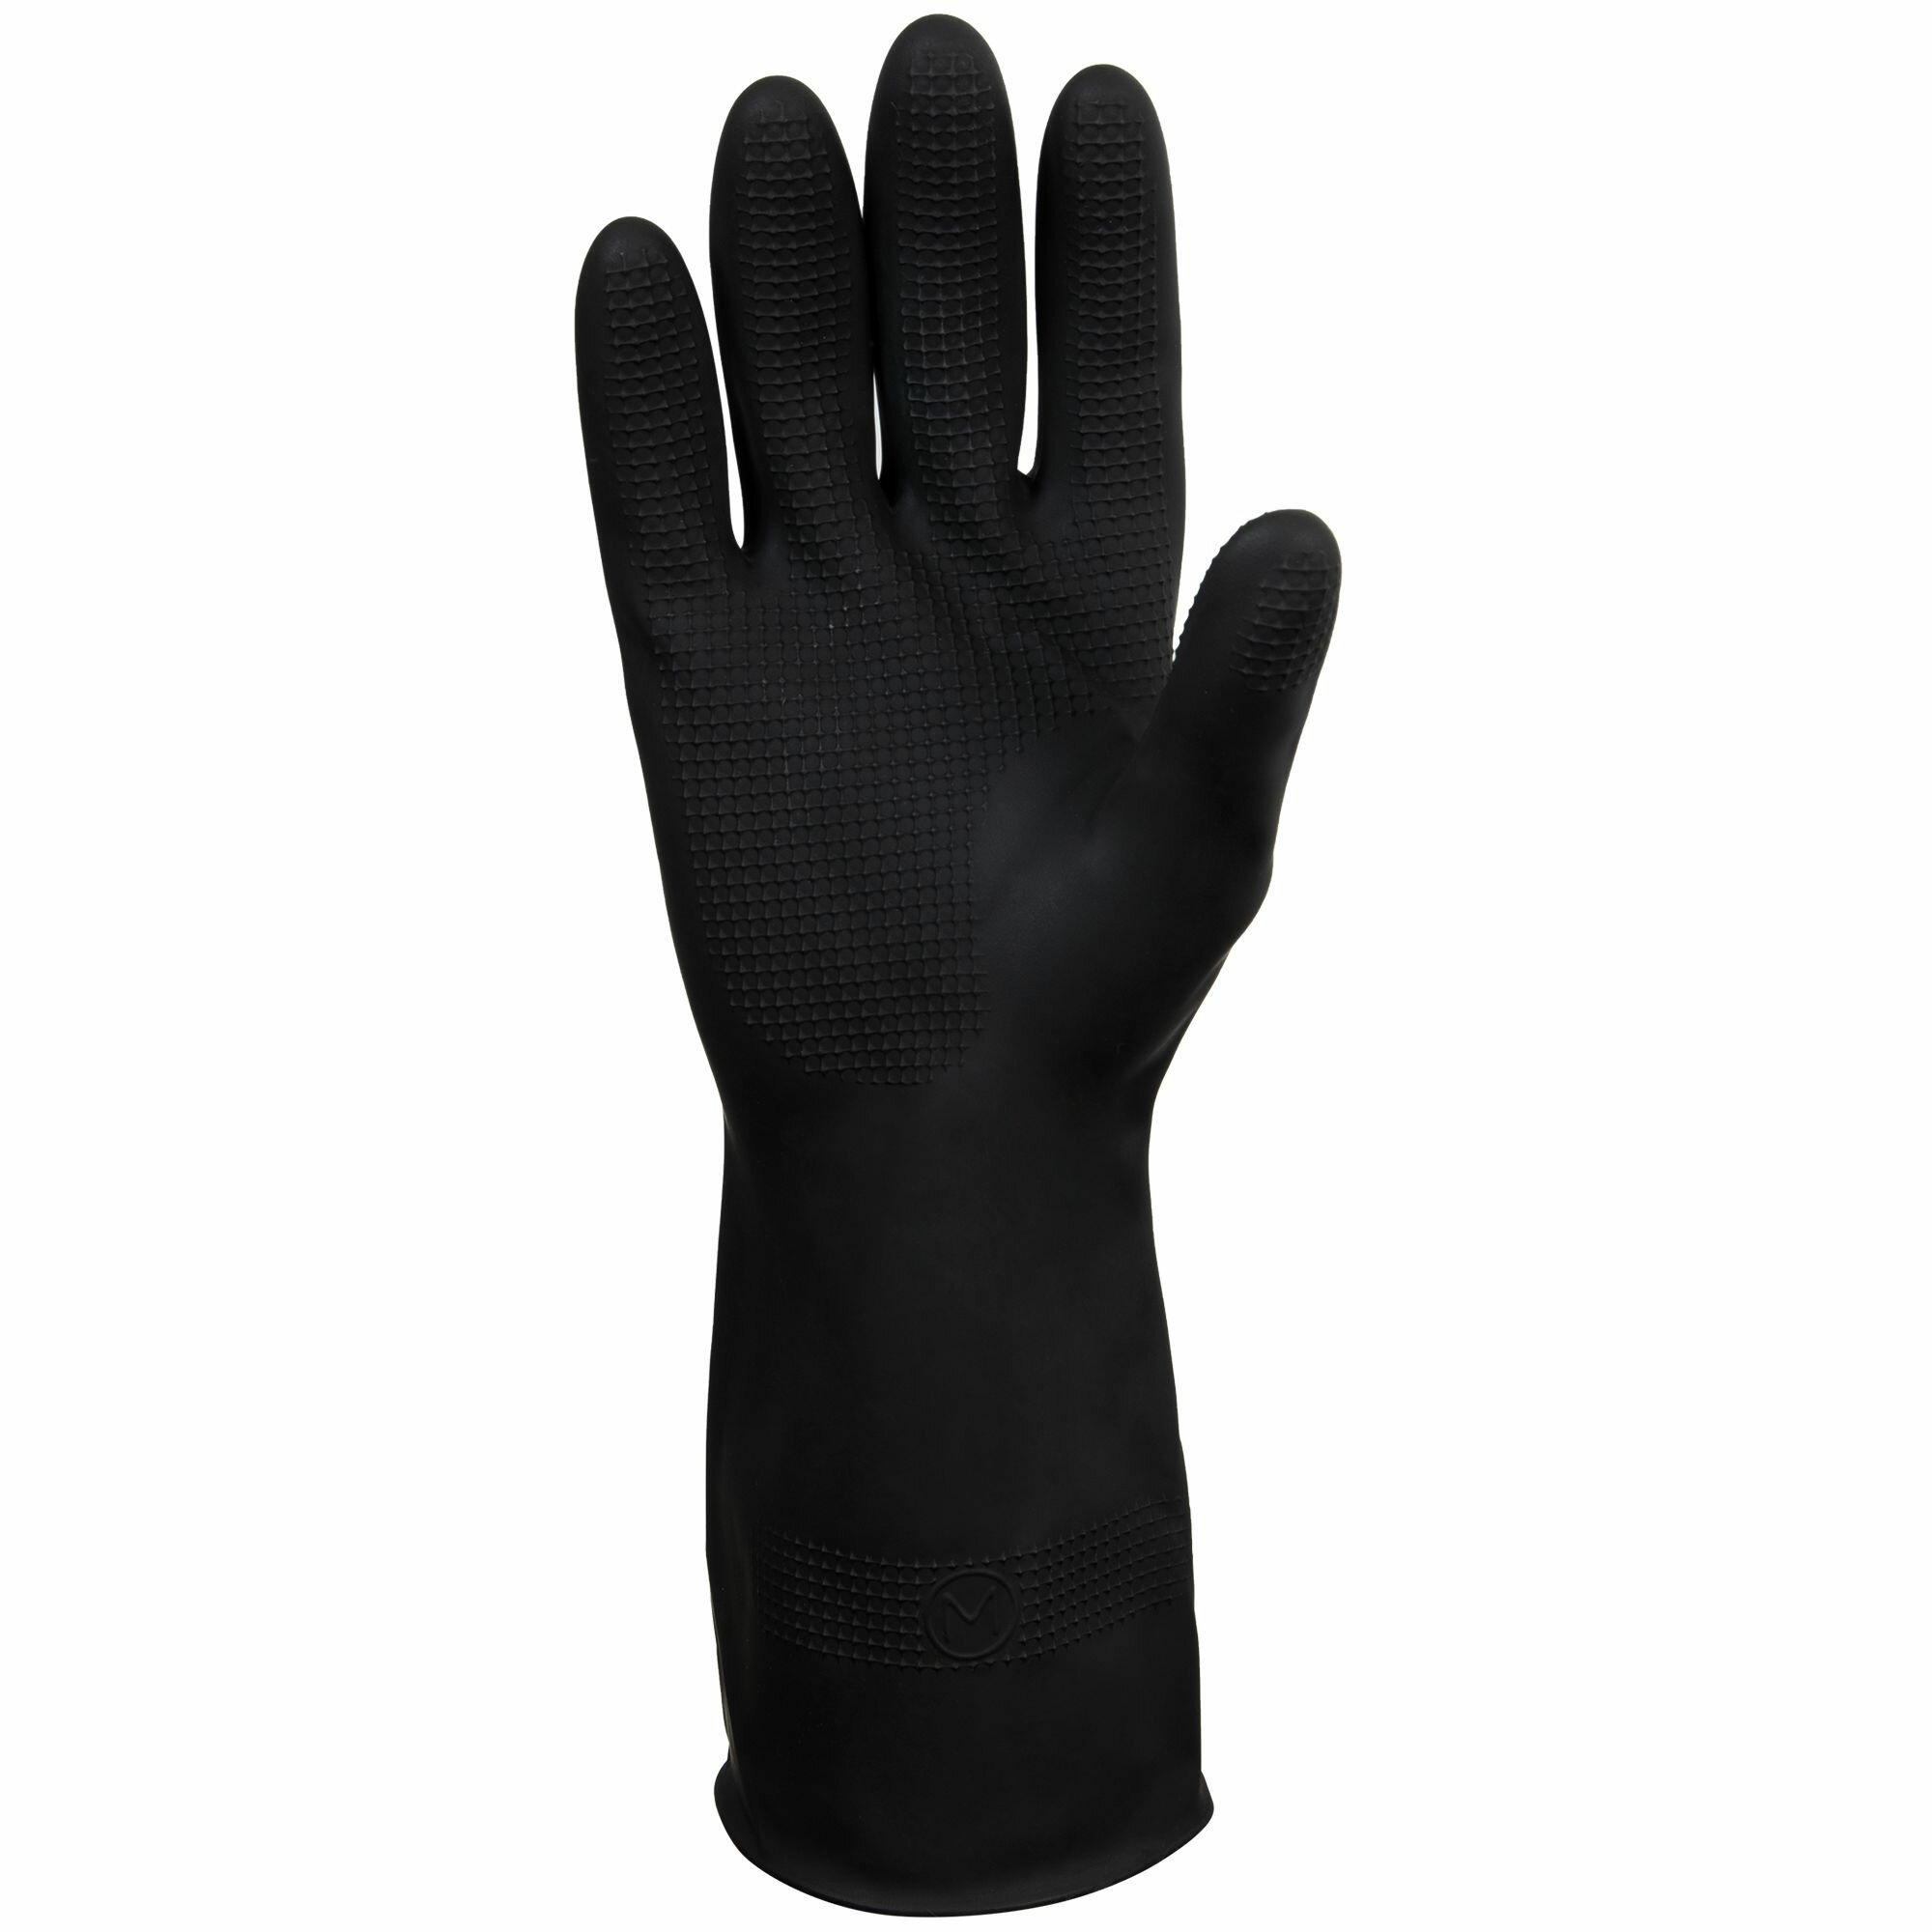 Профессиональные защитные перчатки JCH-601 (L) Acid КЩС-2 из латекса для защиты от химических воздействий